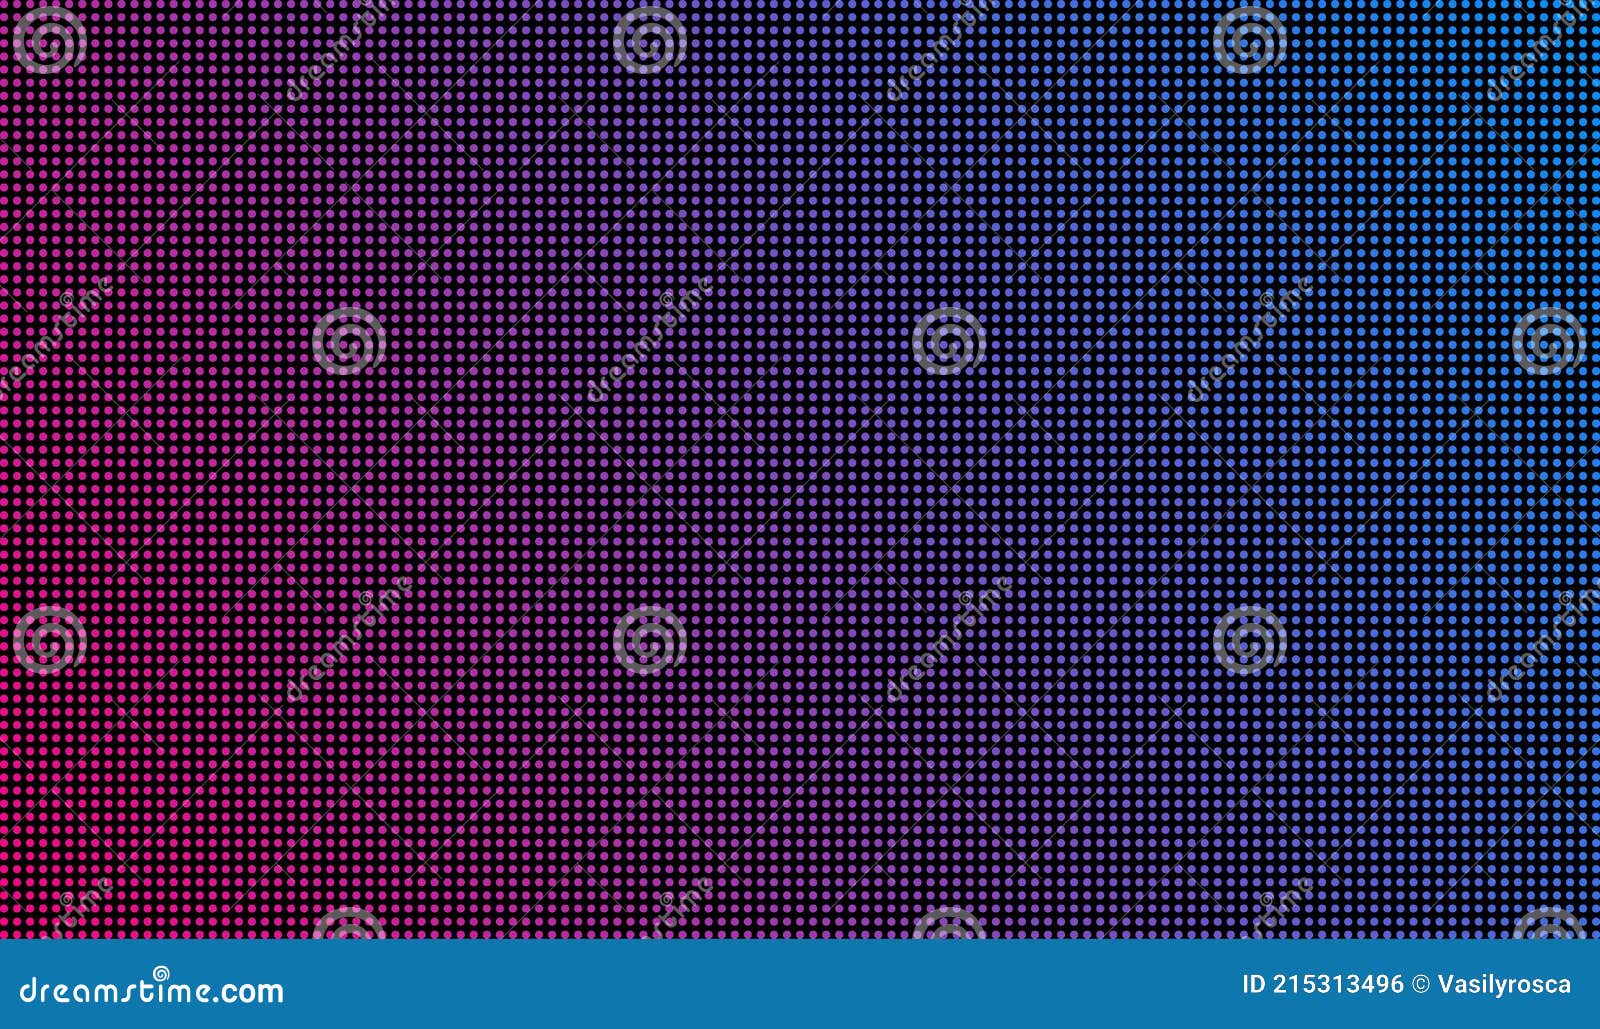 Hãy cùng tìm hiểu về Led Screen Texture Dots Background Display Light. TV Pixel Pattern, sản phẩm tinh tế này sẽ giúp bạn tạo ra những hình ảnh hoàn hảo cho các video clip, trang web hoặc chủ đề trang trí. Với độ nét cao và sự phong phú đa dạng về kiểu dáng, chắc chắn bạn sẽ bị cuốn hút ngay từ cái nhìn đầu tiên. Hãy sử dụng sản phẩm này để tạo ra những trải nghiệm tốt nhất cho những ý tưởng sáng tạo của bạn!